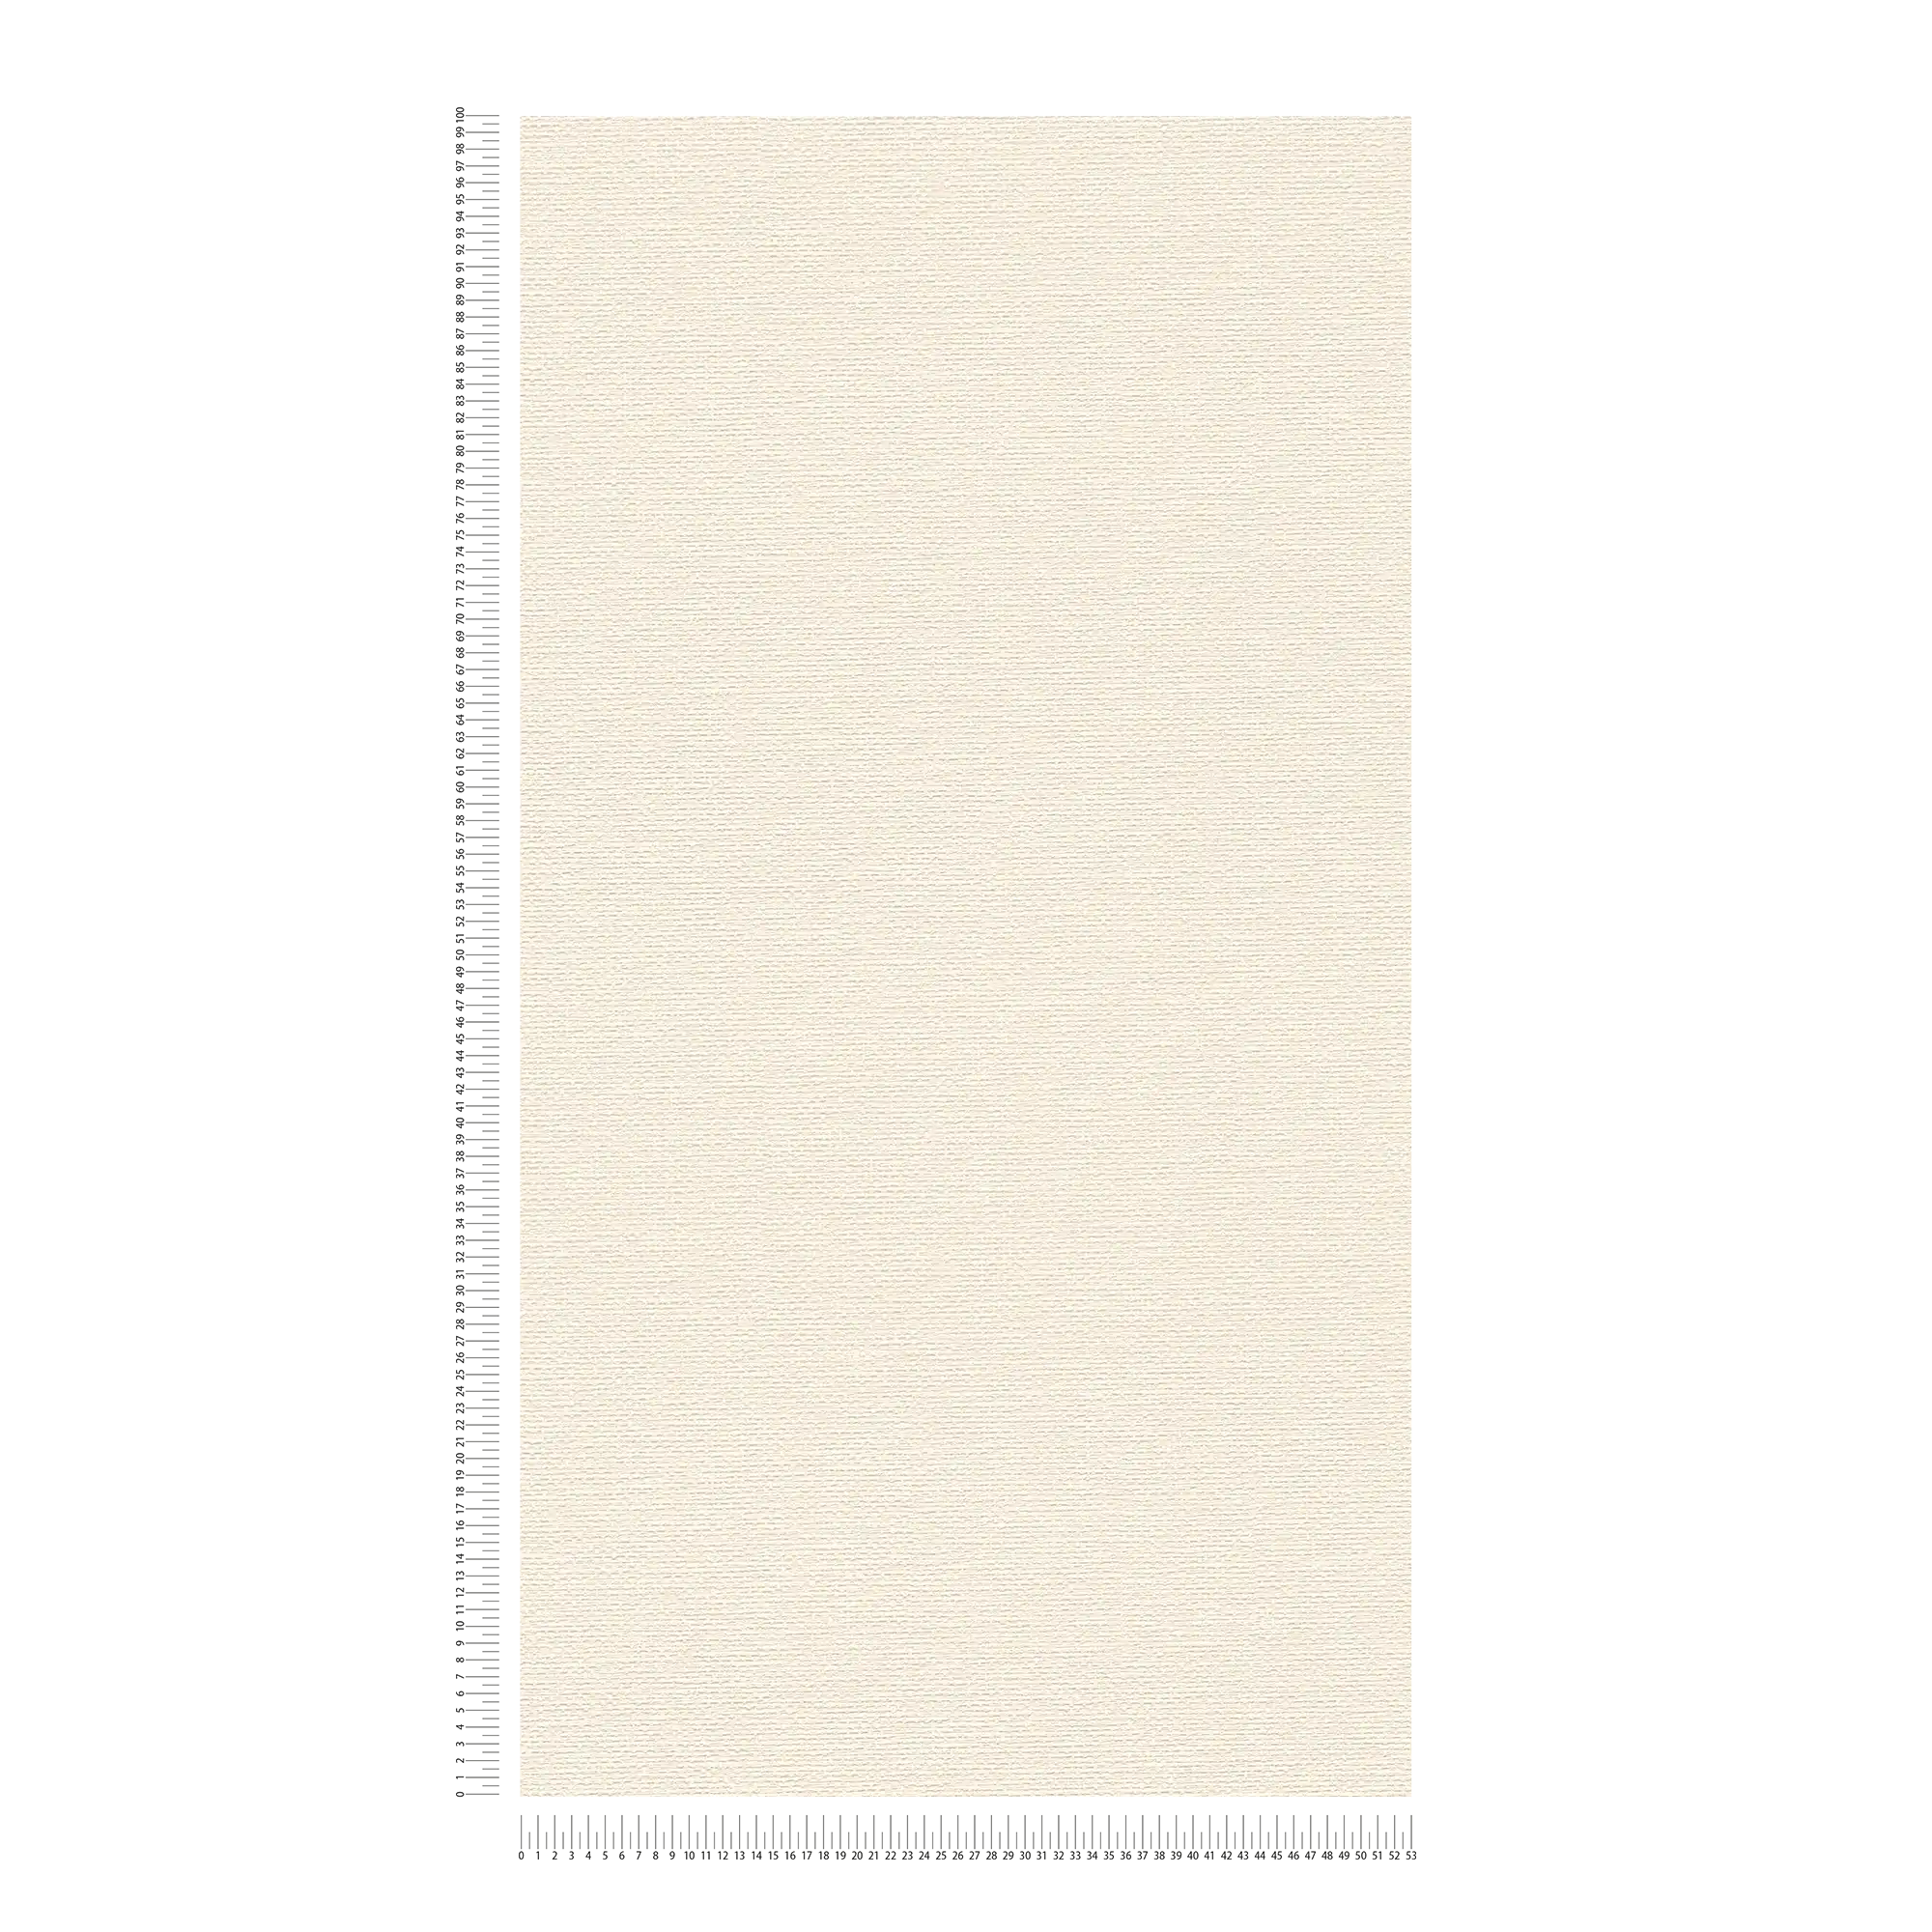             Papel pintado de tela de estilo escandinavo - crema, blanco
        